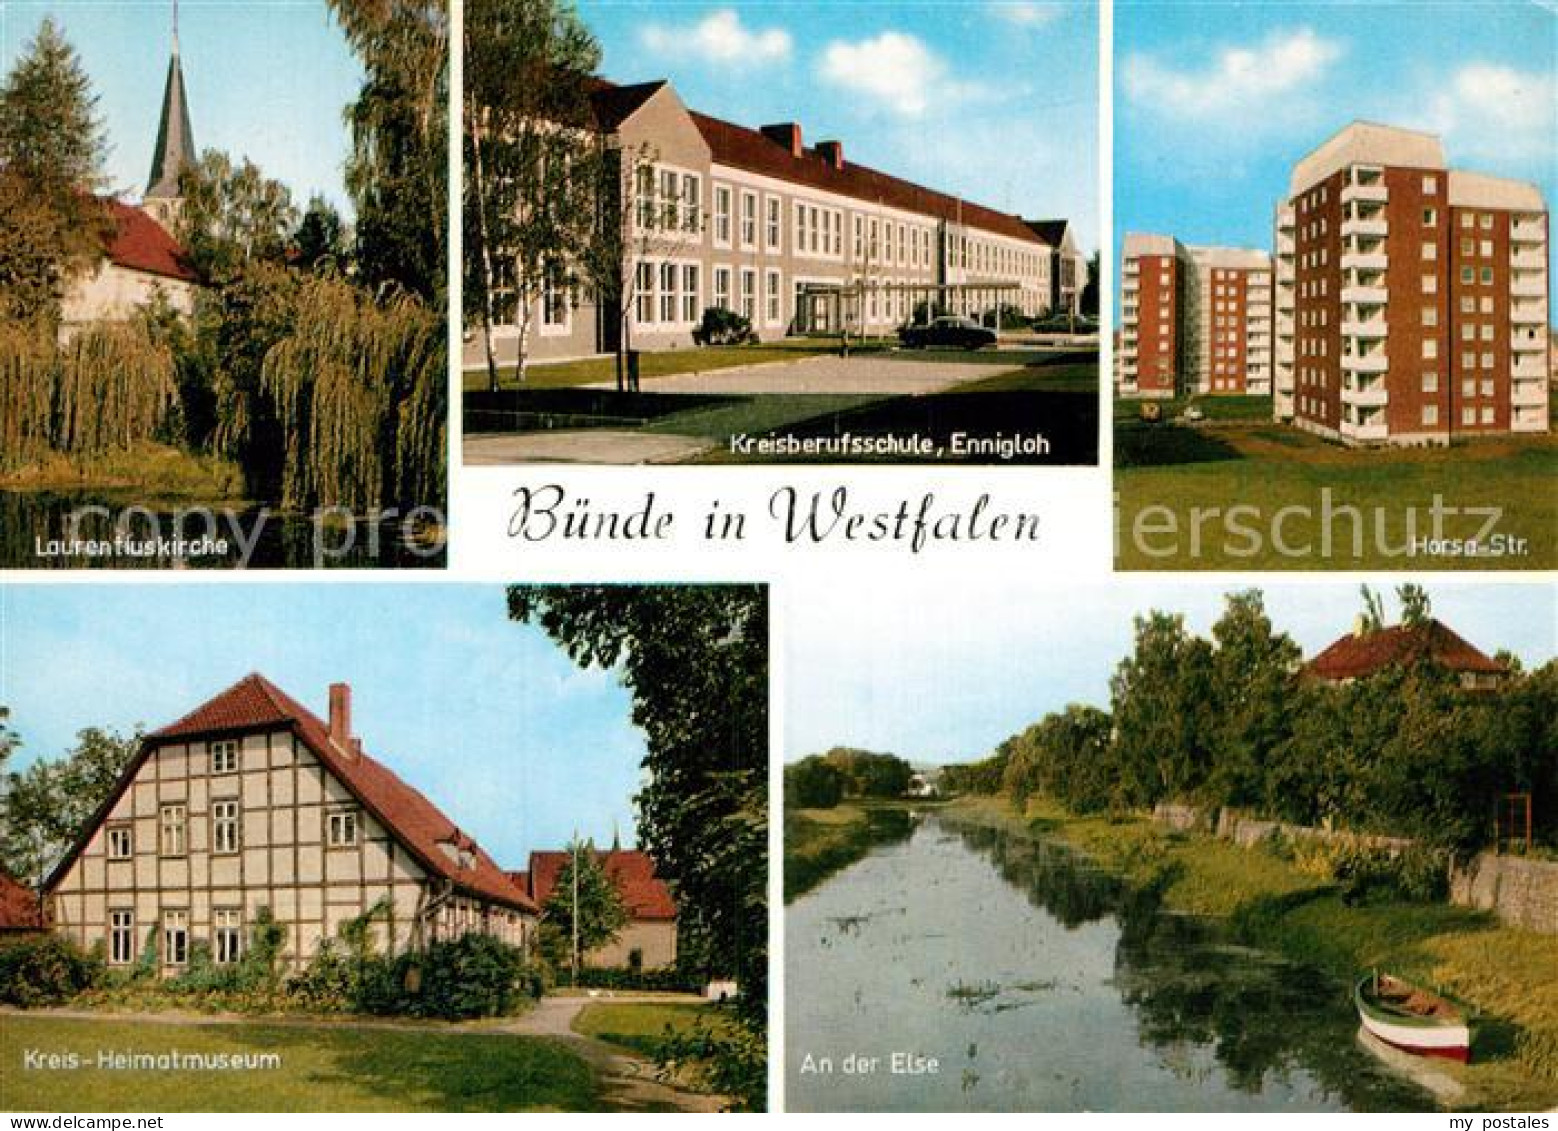 73000946 Buende Westfalen Horsa Strasse Kreisberufsschule Ennigloh Laurentiuskir - Buende